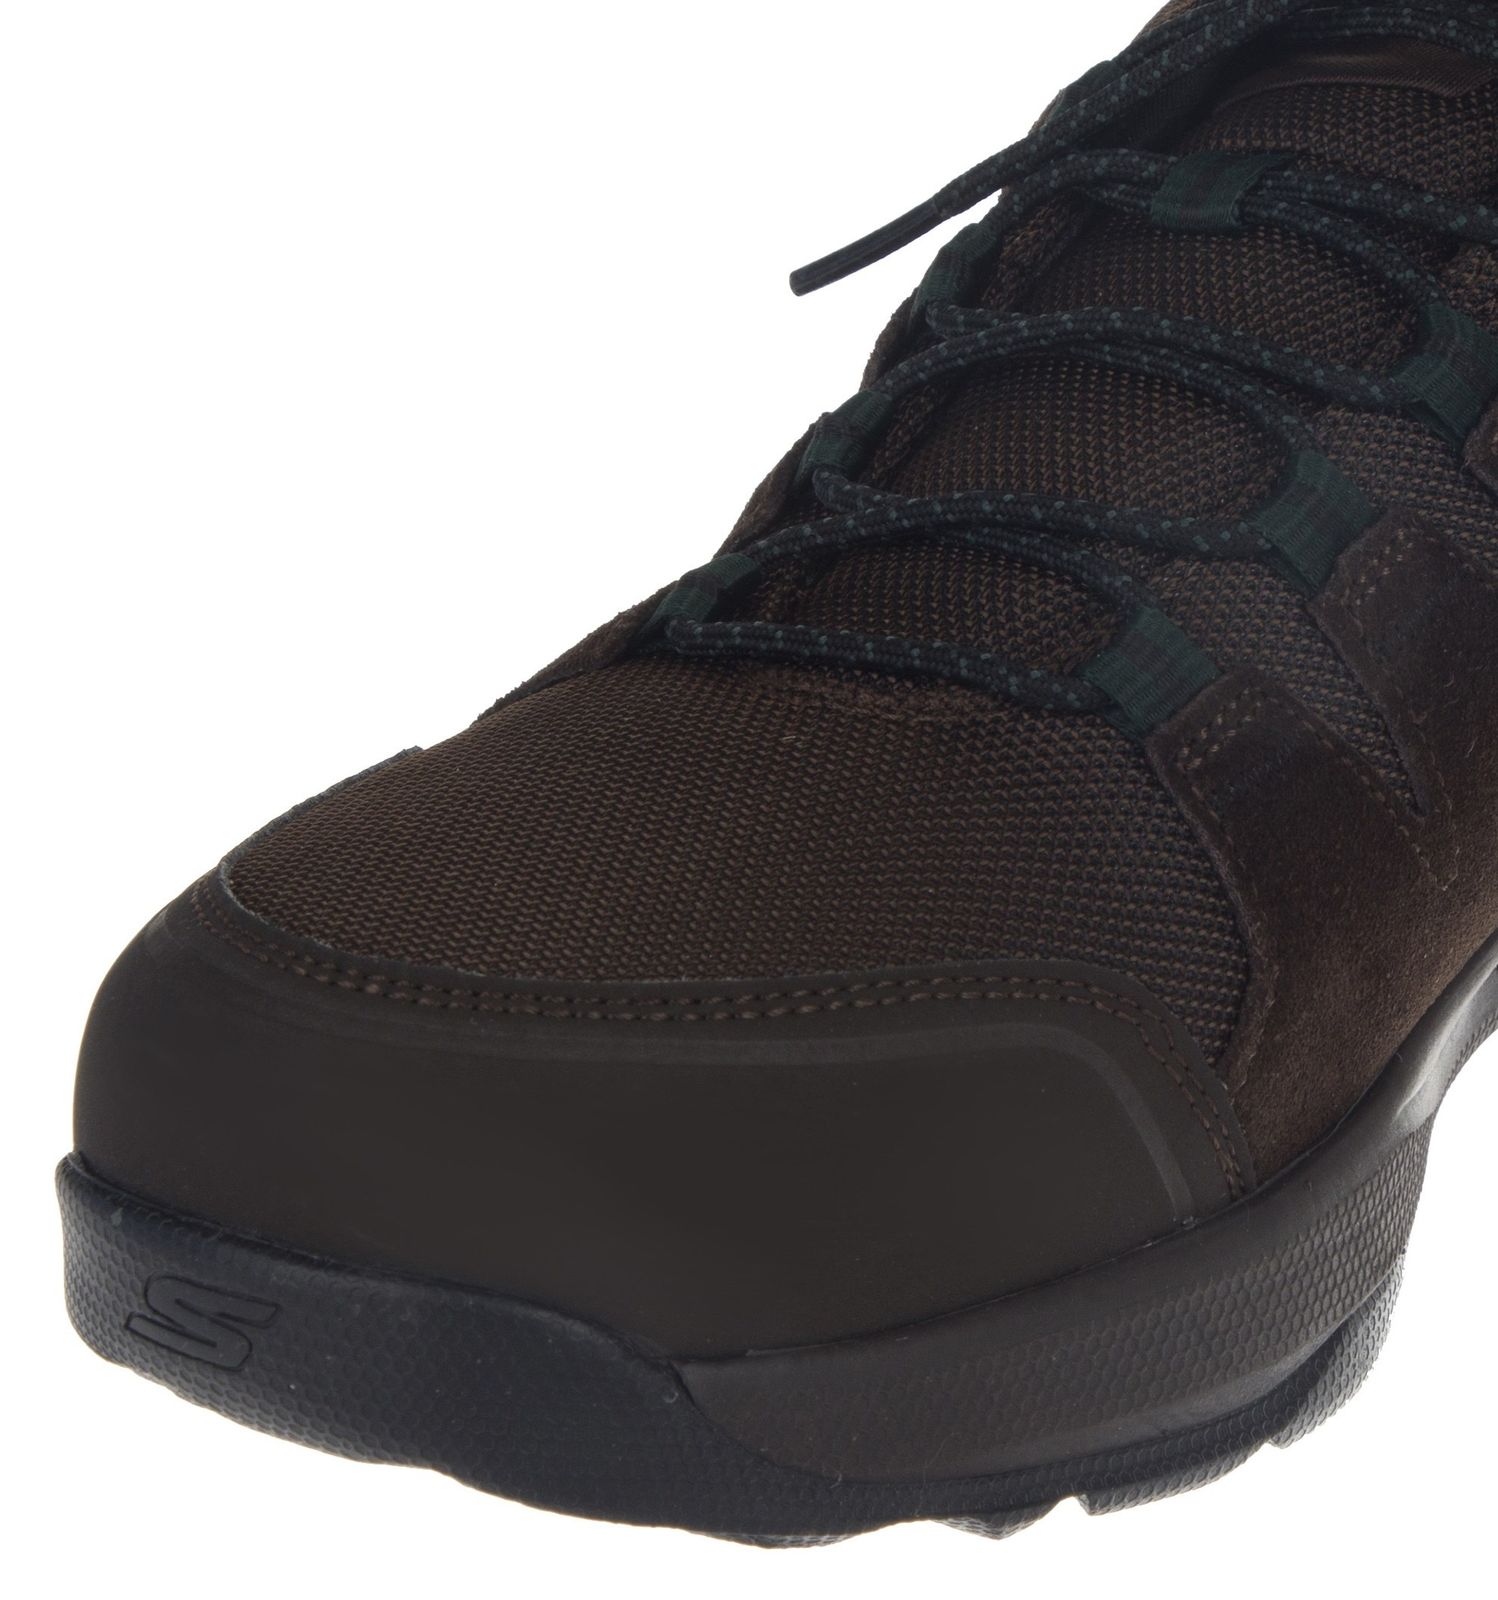 کفش پیاده روی بندی مردانه Gowalk - اسکچرز